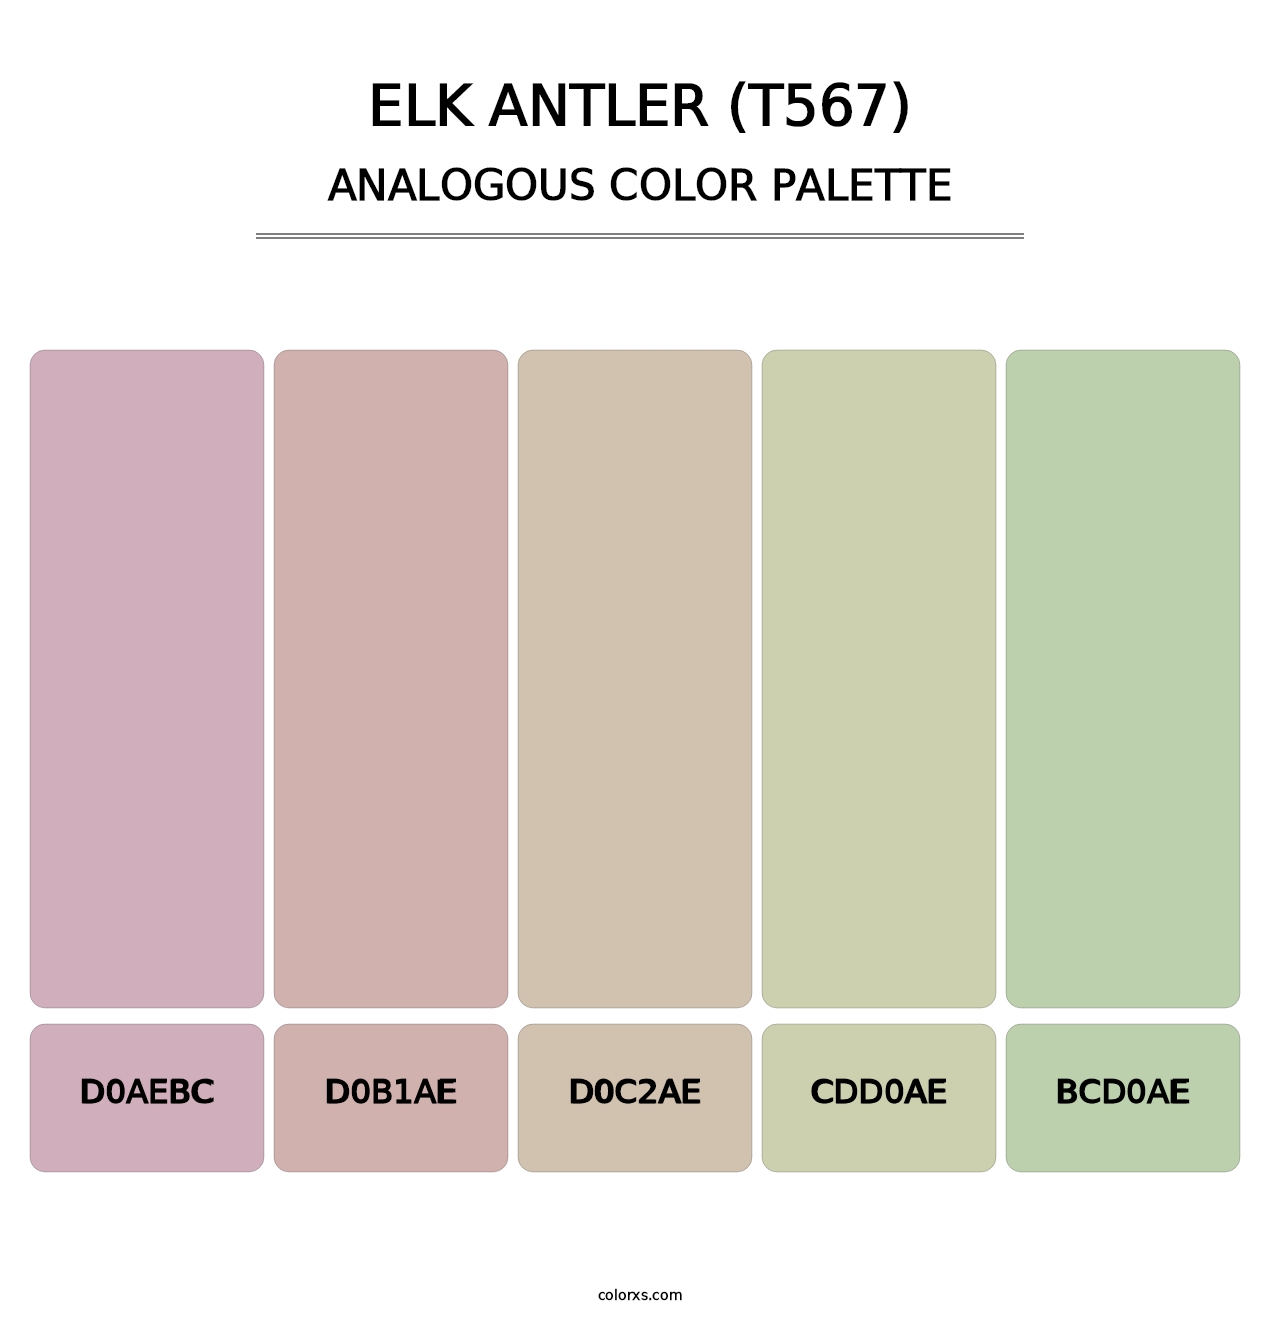 Elk Antler (T567) - Analogous Color Palette